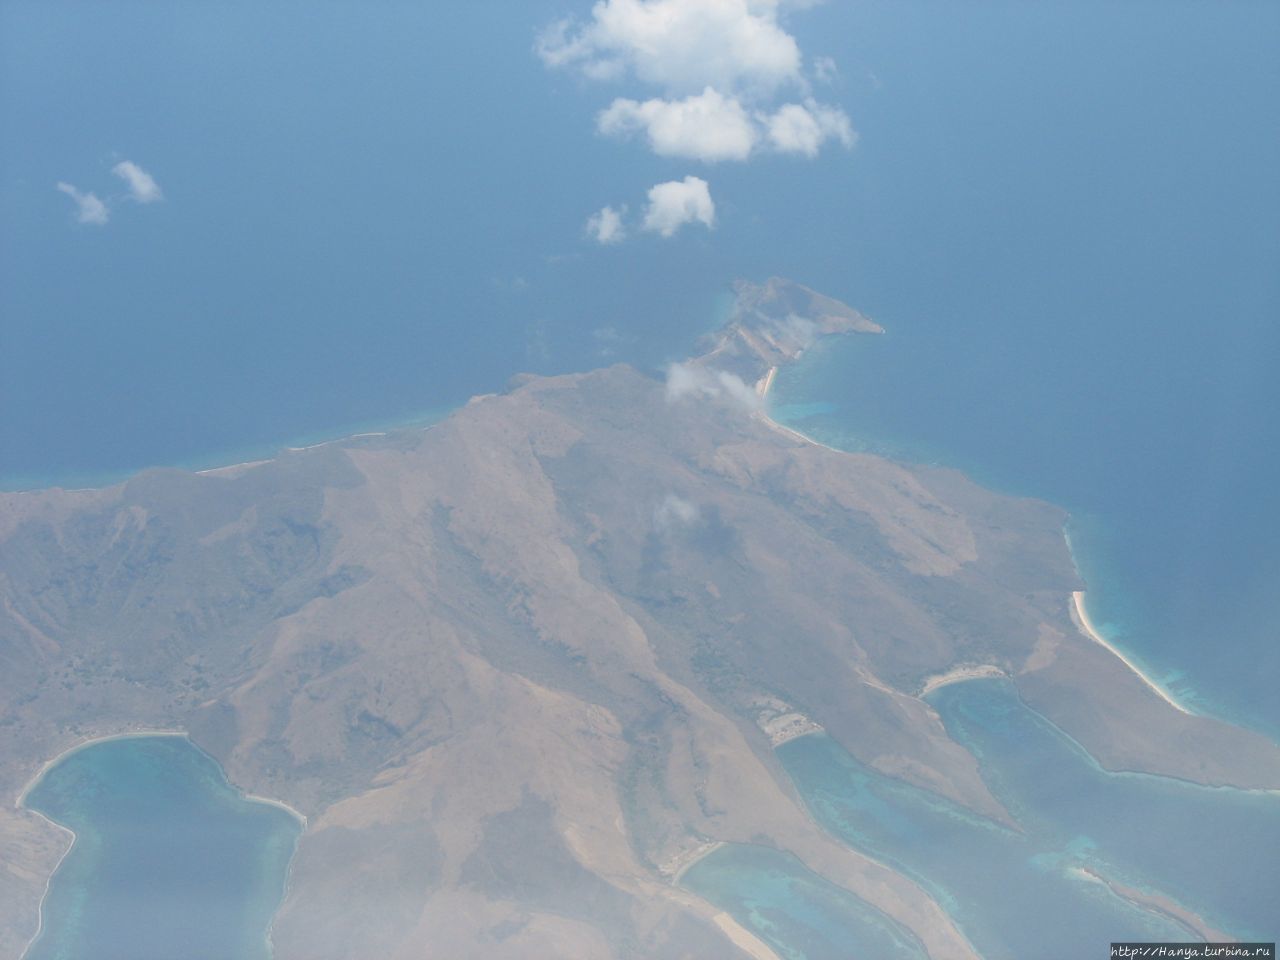 Аэропорт острова Флорес Лабуан Баджо, остров Флорес, Индонезия